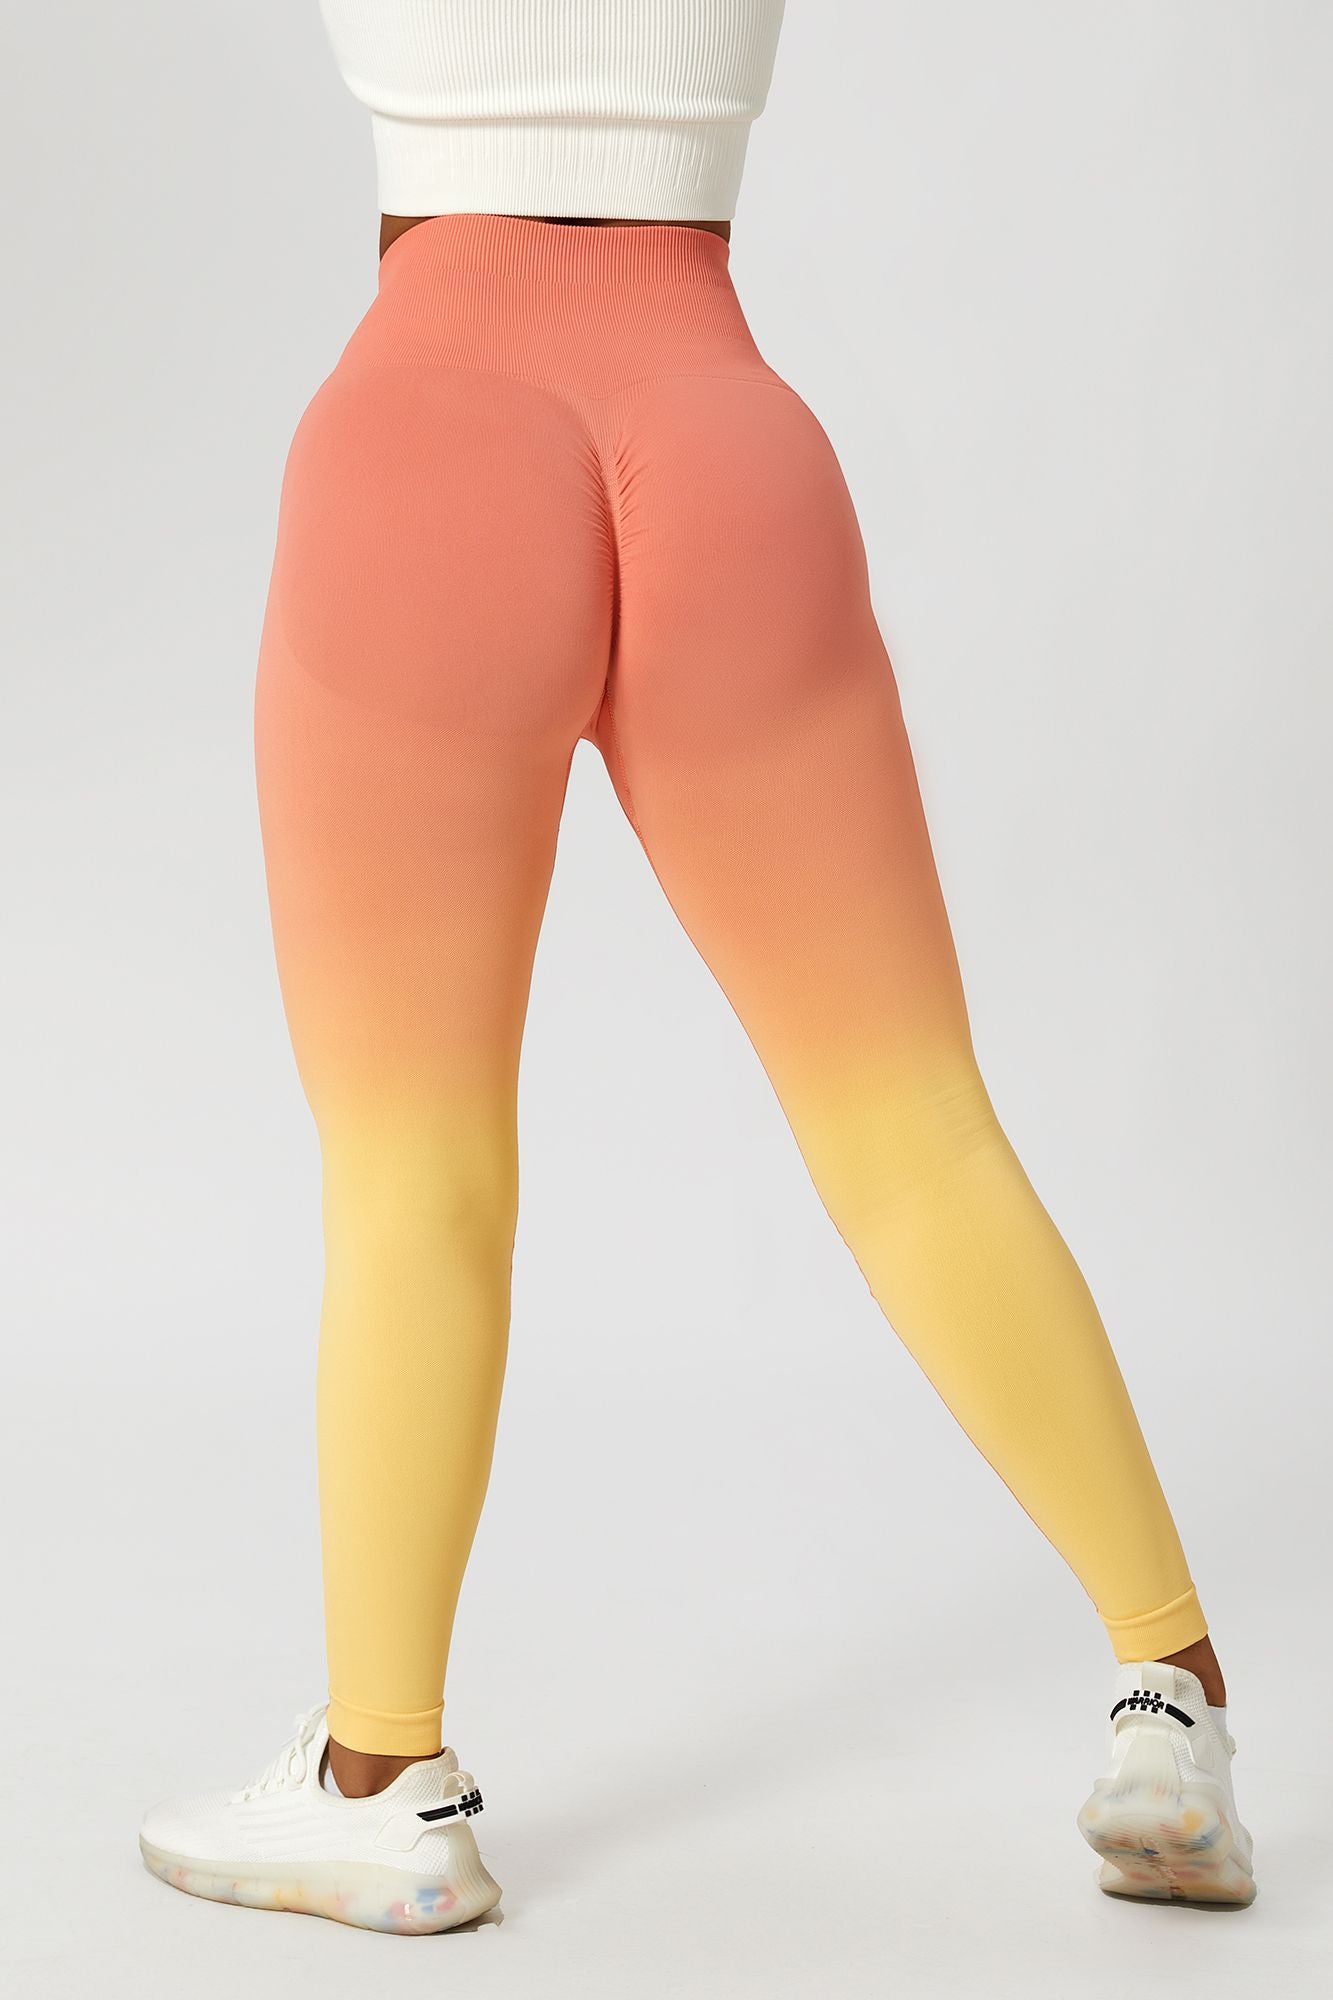 Color_Orange / Yellow